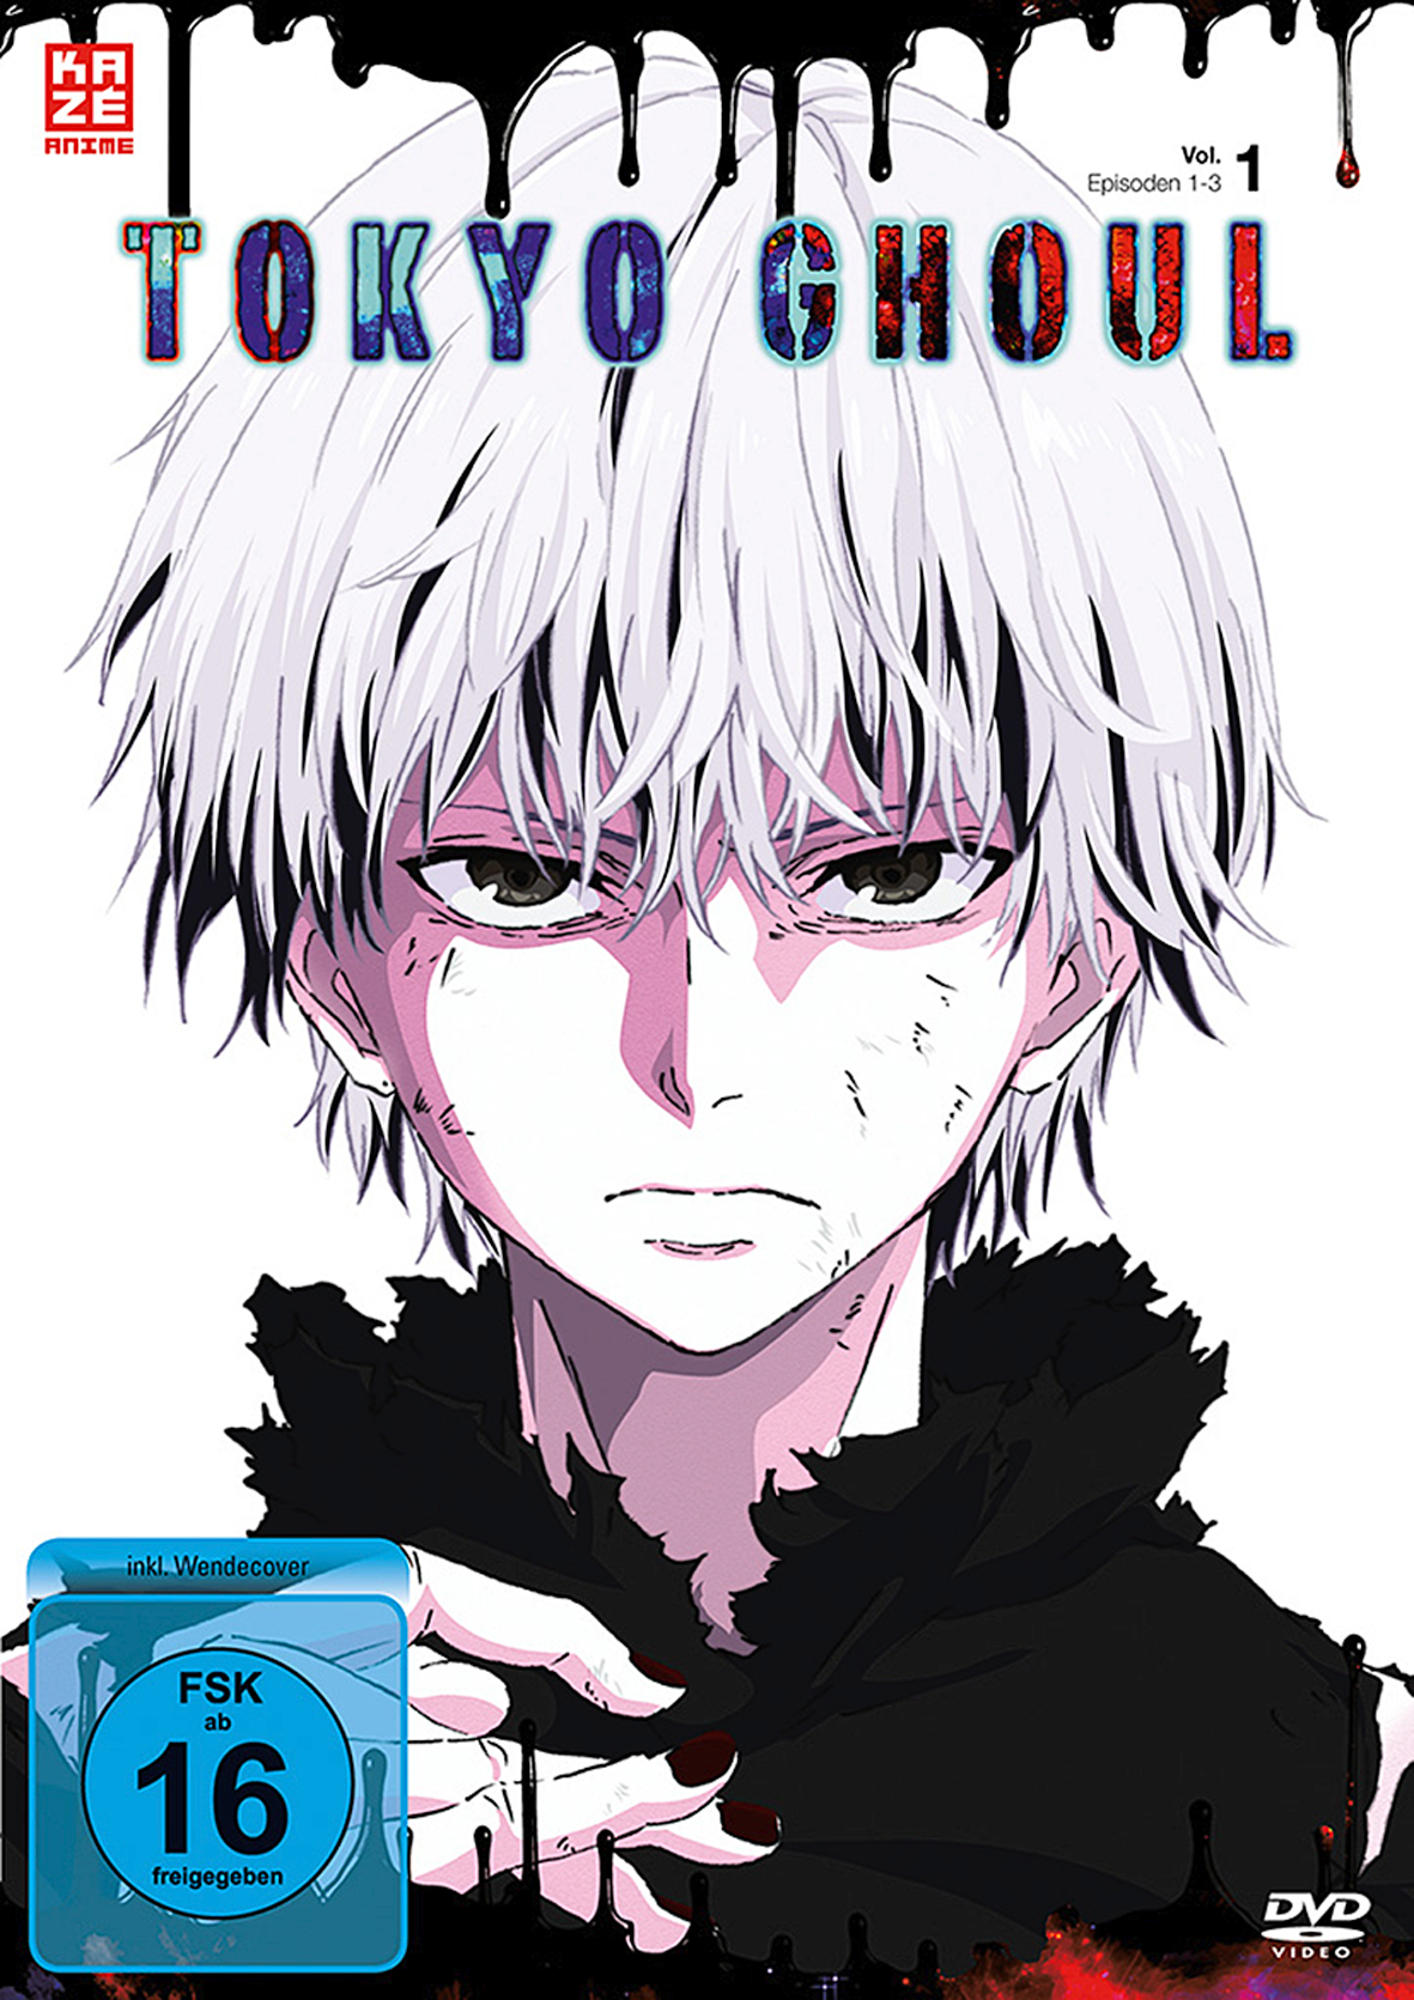 - DVD Ghoul 1 Tokyo Vol.